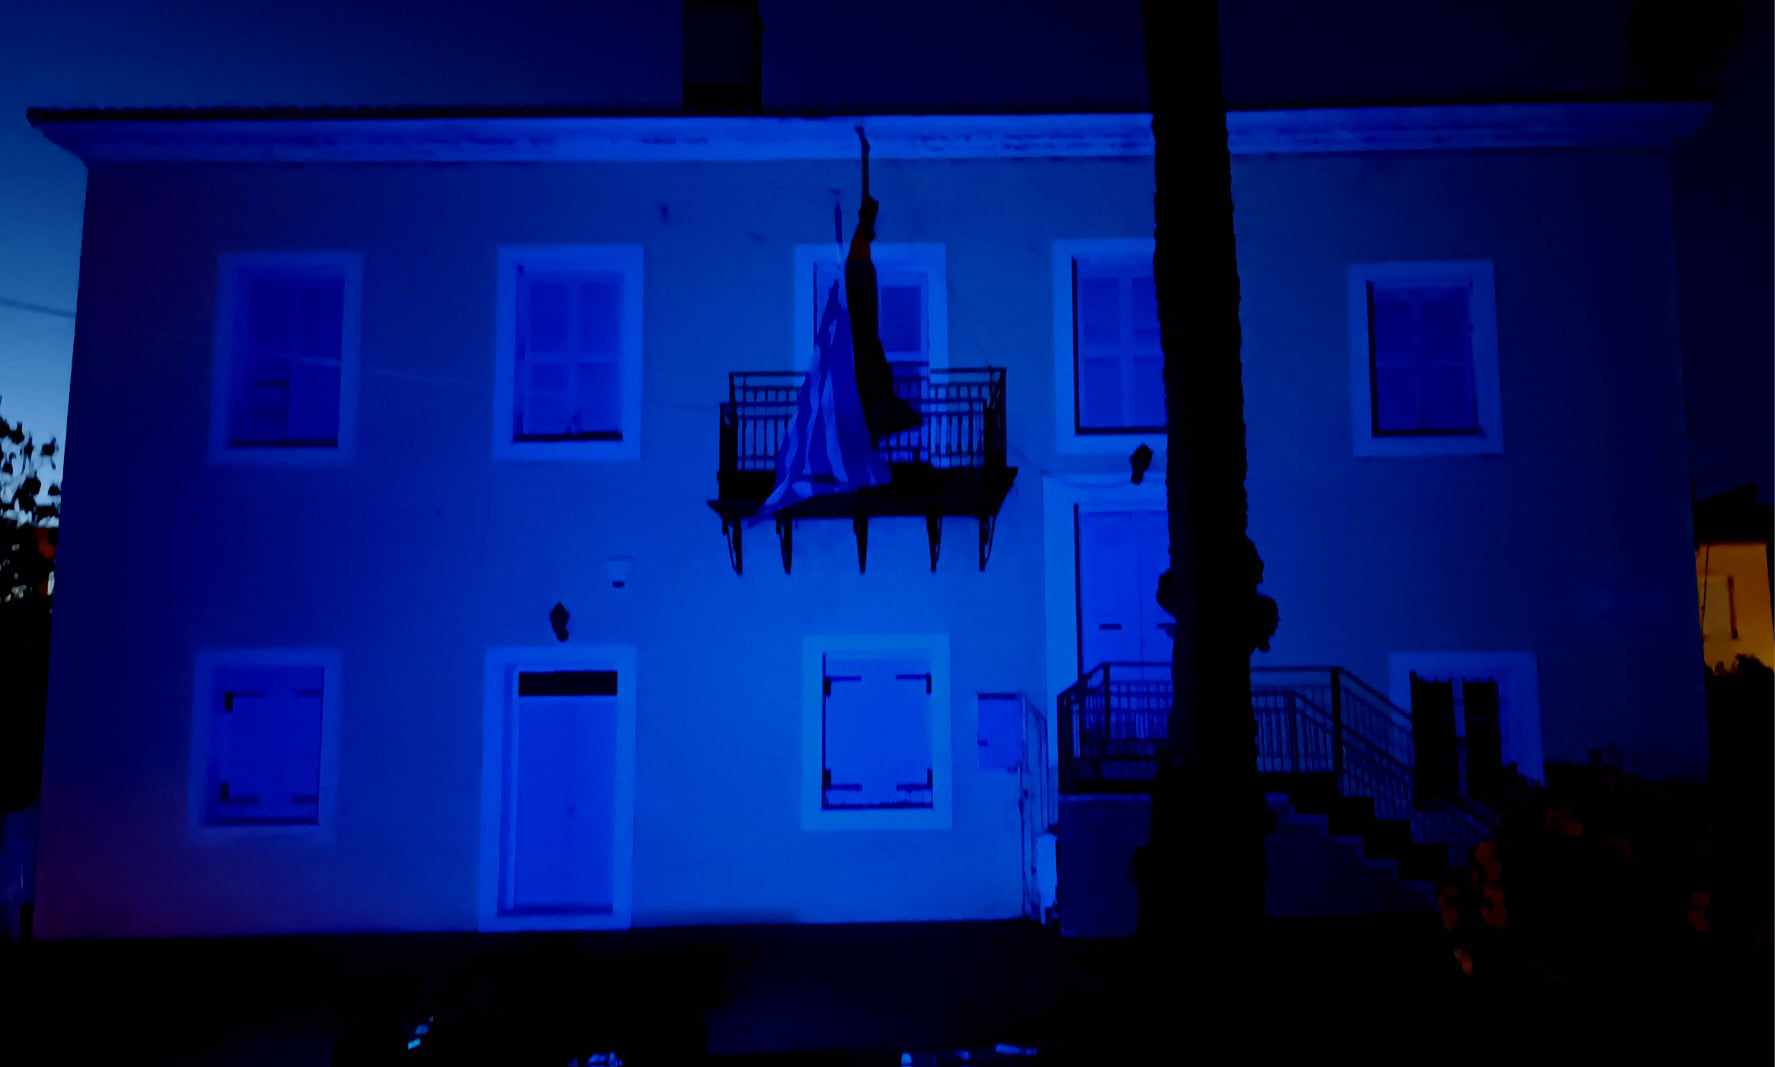  Ο Δήμος Ιερής Πόλης Μεσολογγίου φώτισε «μπλε» το Τρικούπειο για την Παγκόσμια Ημέρα Ευχής!